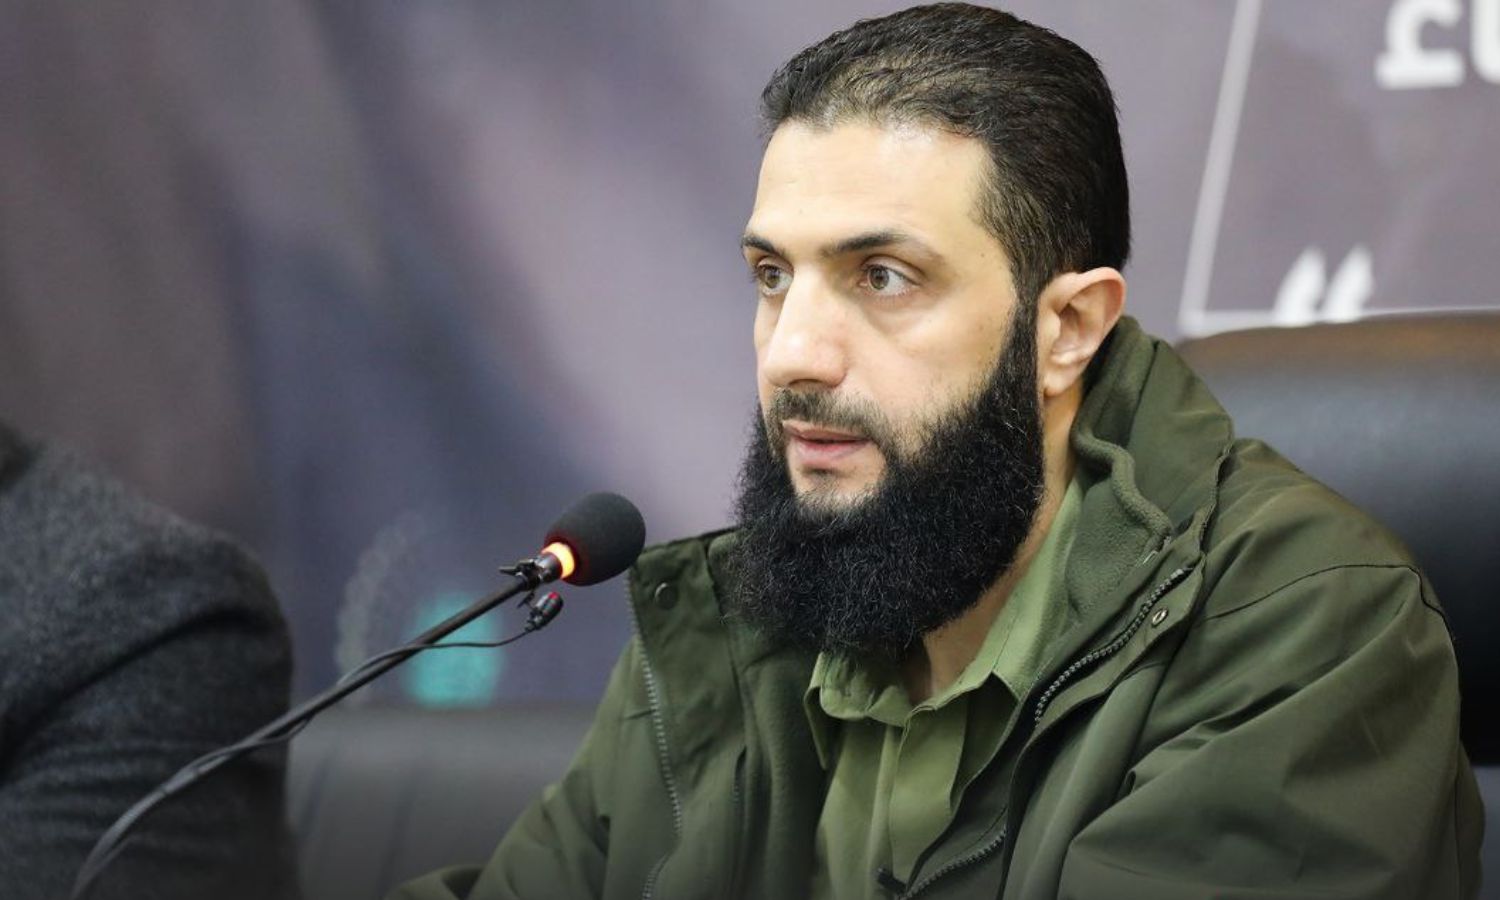 القائد العام لـ"هيئة تحرير الشام"، "أبو محمد الجولاني" خلال مؤتمر لإطلاق حملة دعم لمخيمات شمالي سوريا- 15 من كانون الأول 2022 (أمجاد)